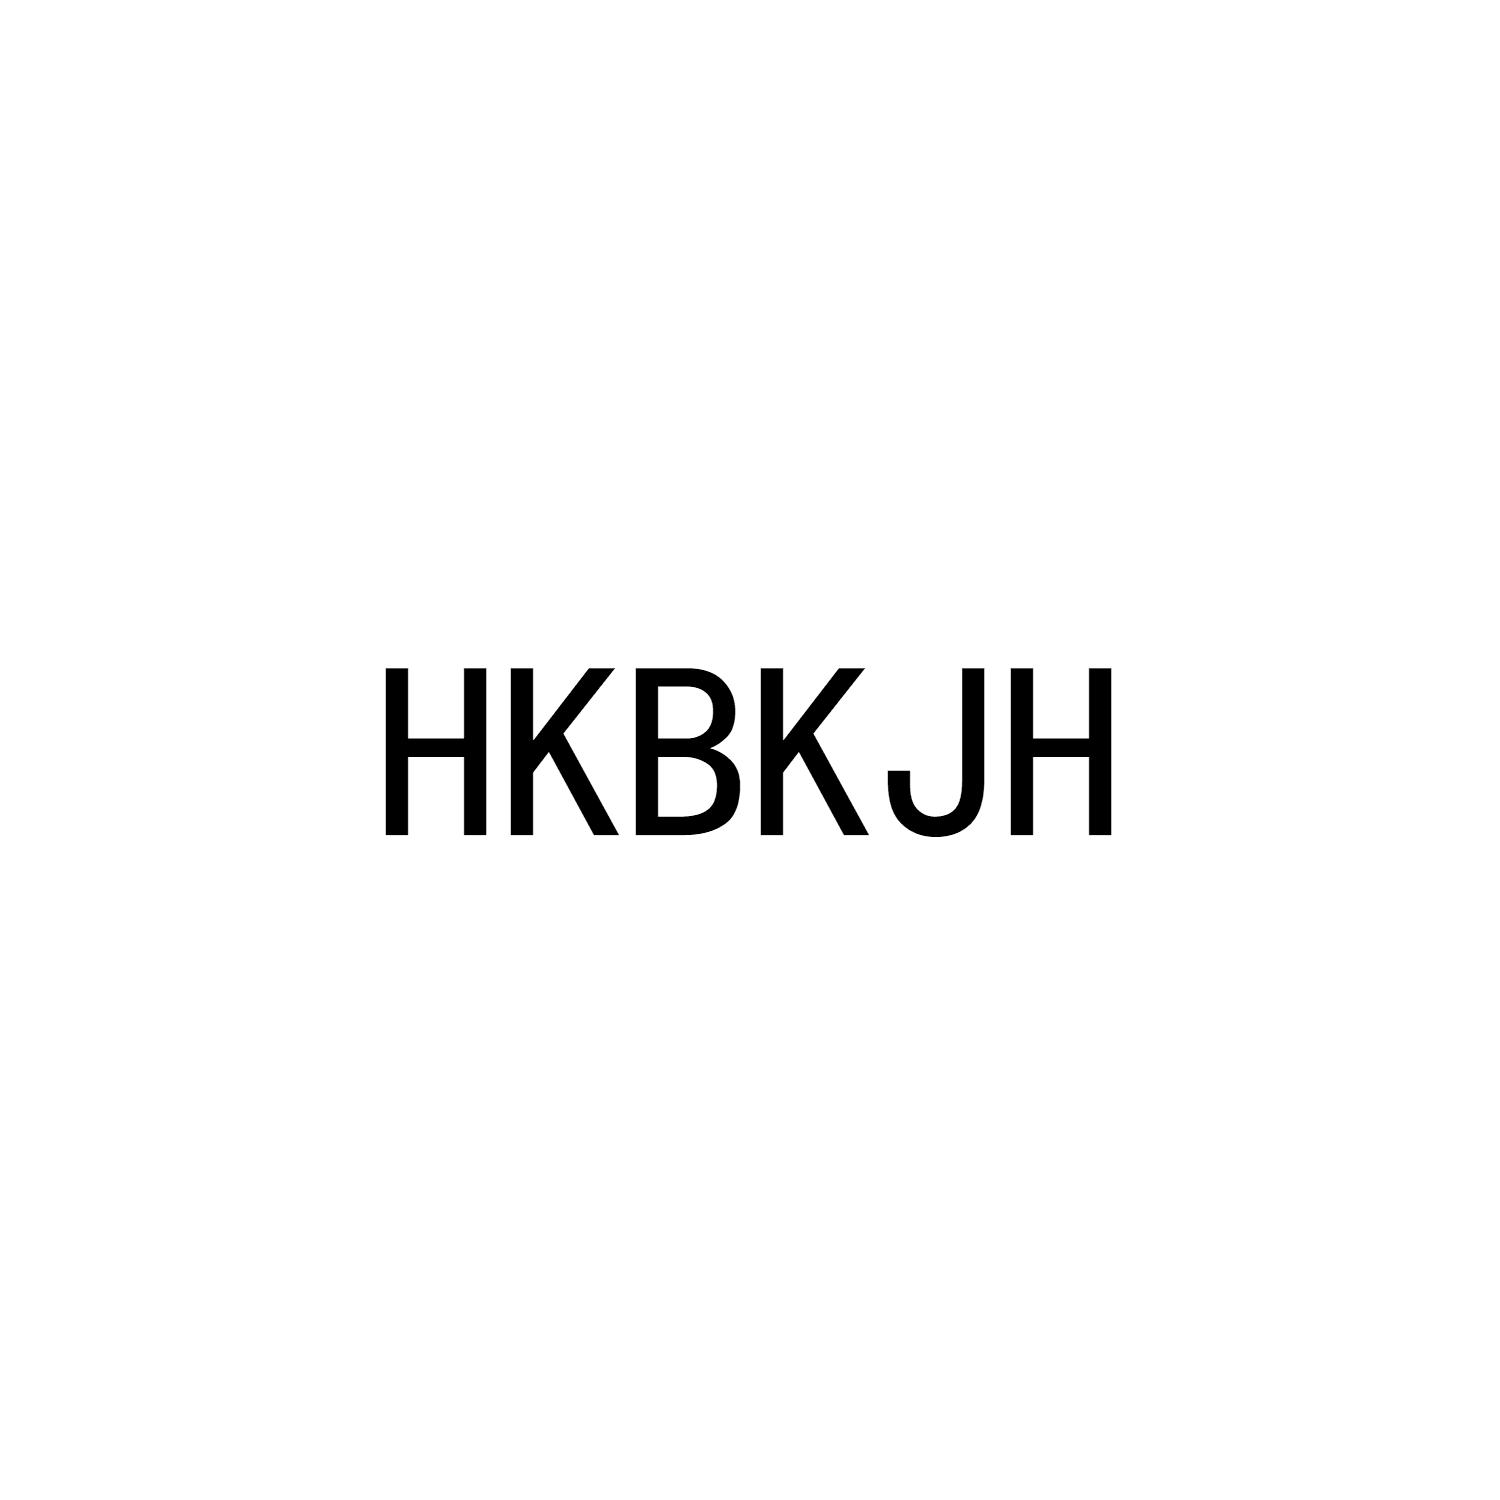 21类-厨具瓷器HKBKJH商标转让